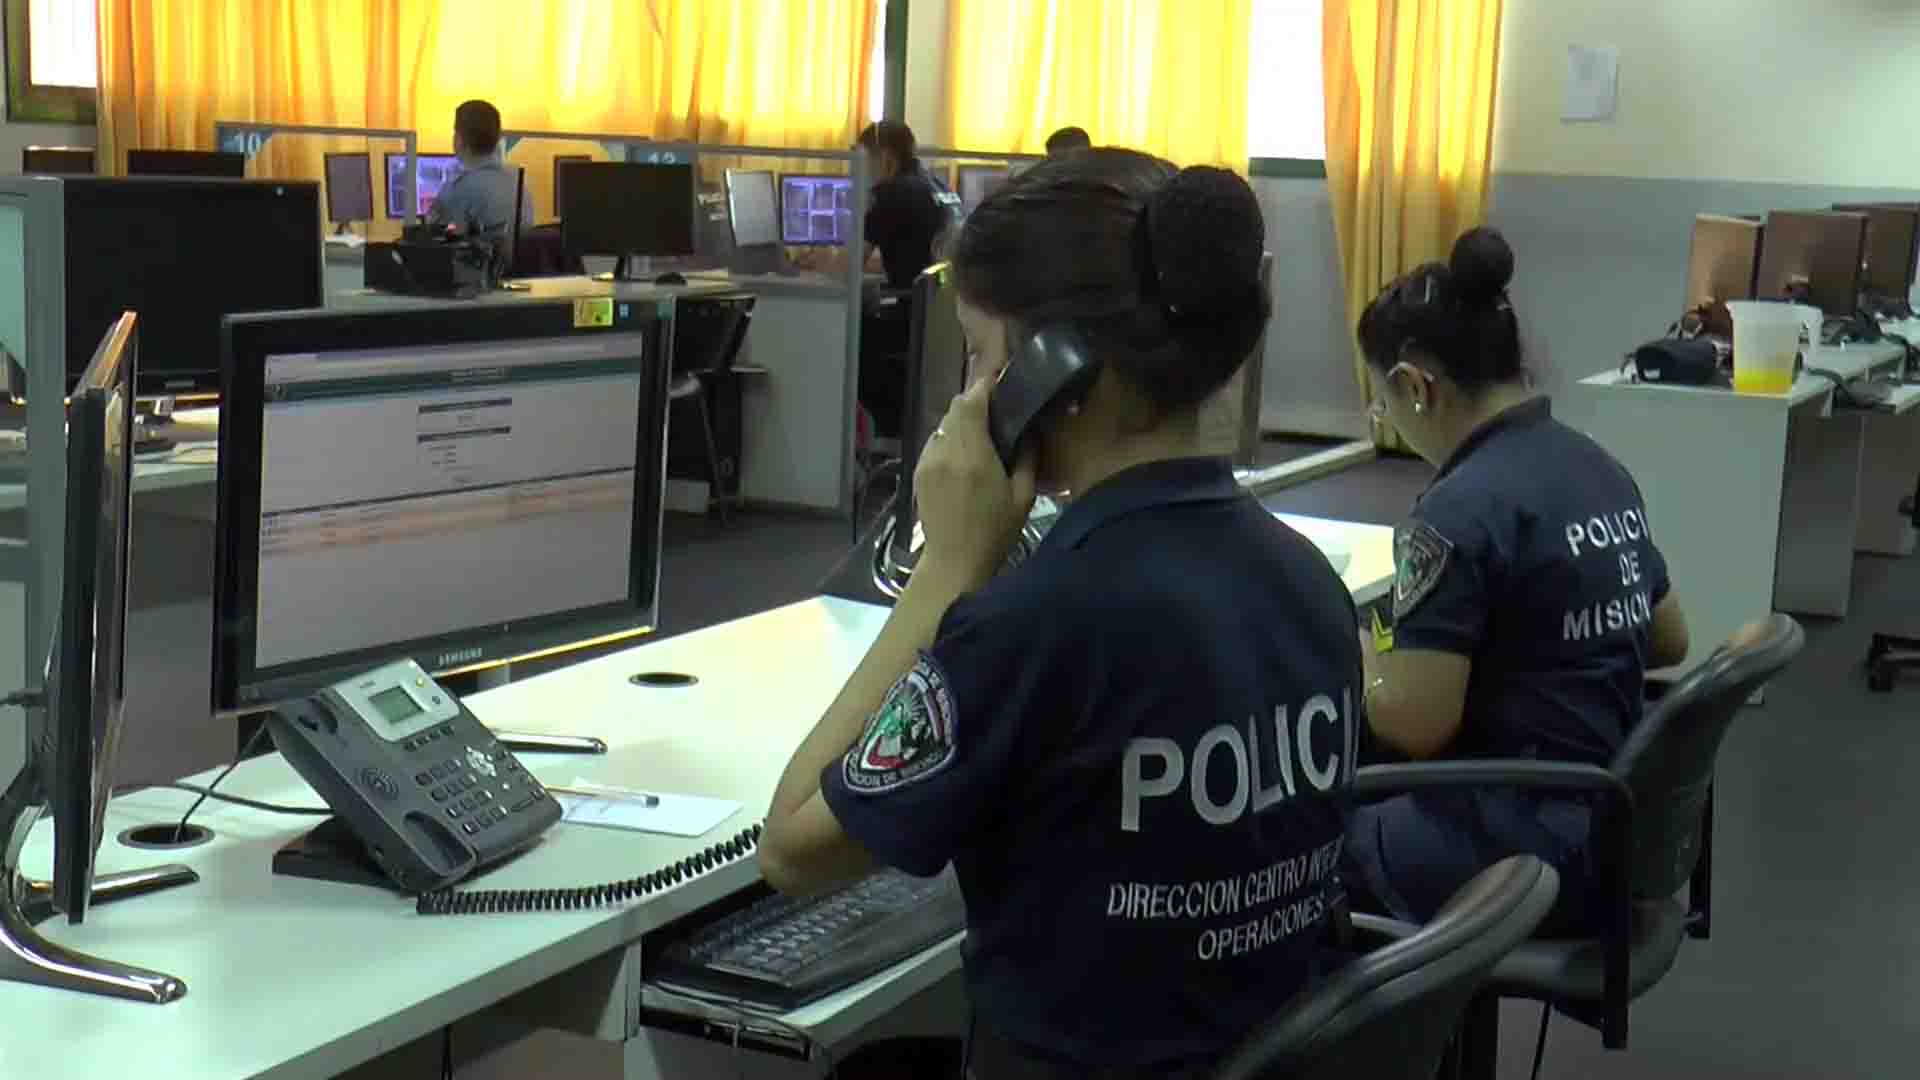 La Policía de Misiones pondrá en uso el sistema de comunicaciones P25